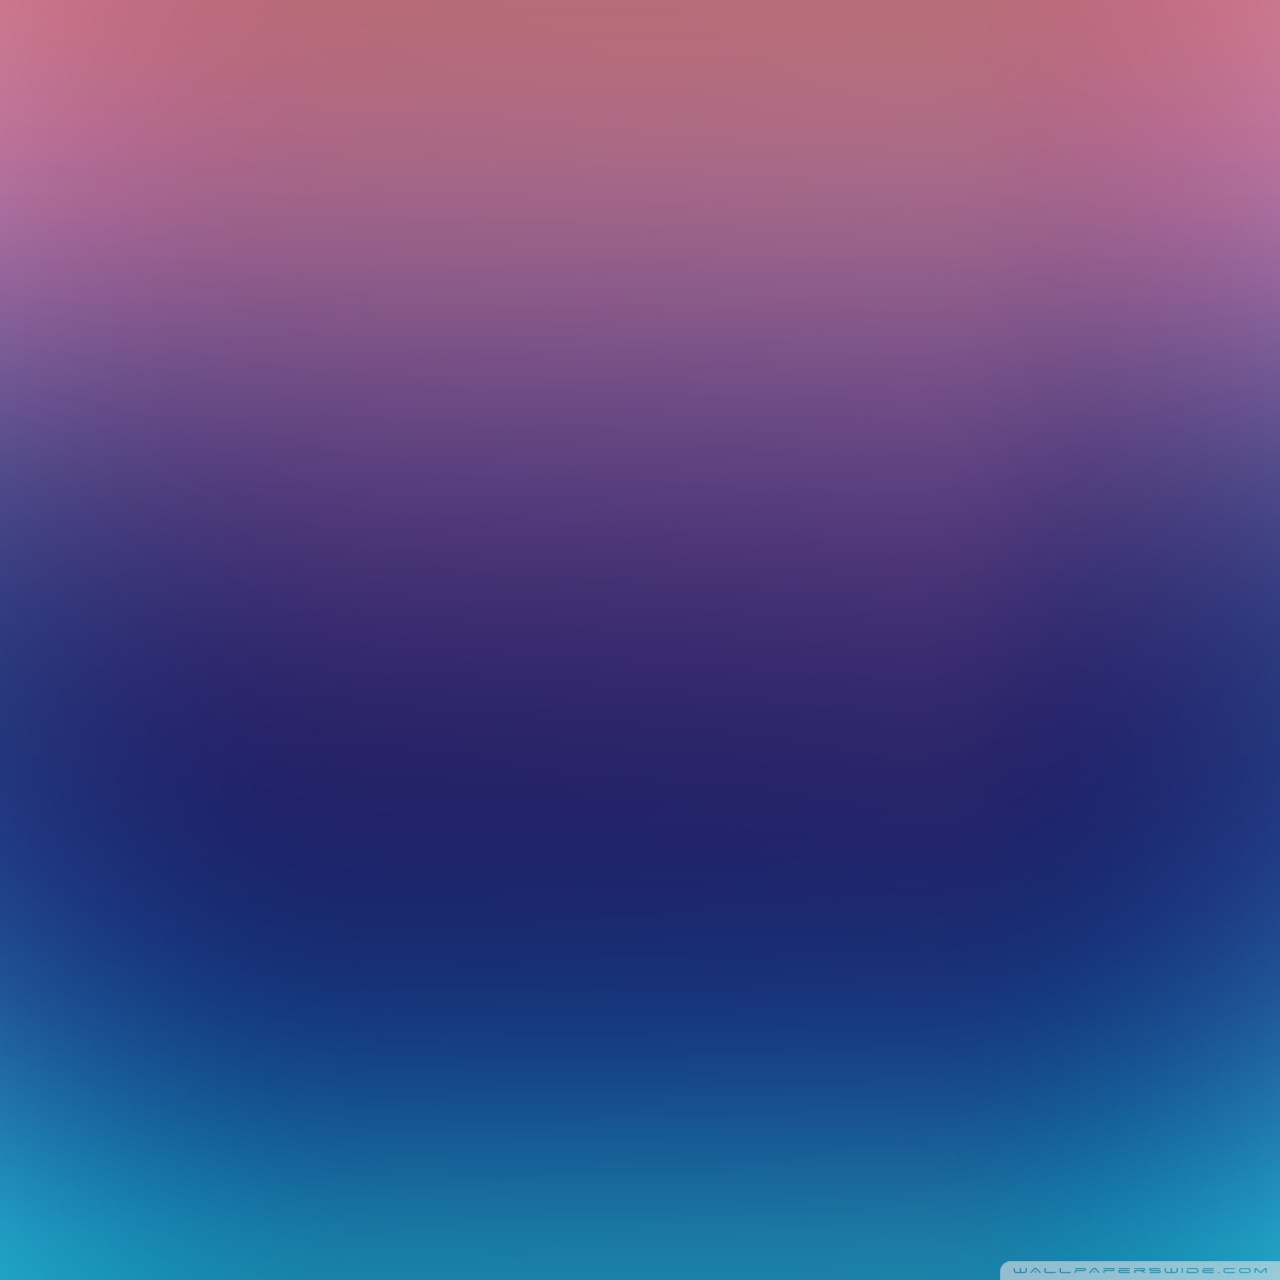 Colorful Blurry Background V 4K HD Desktop Wallpaper For 4K